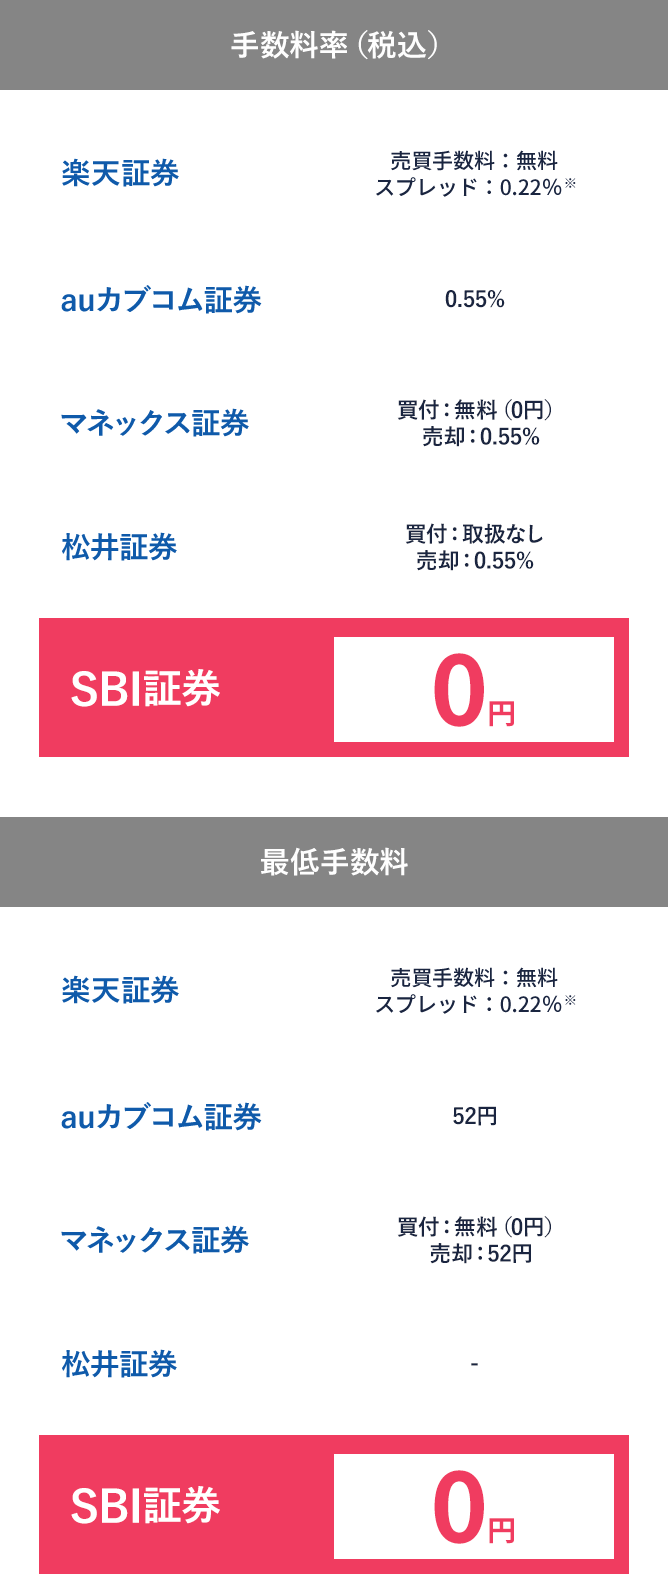 国内株式【単元未満株（S株）】手数料比較